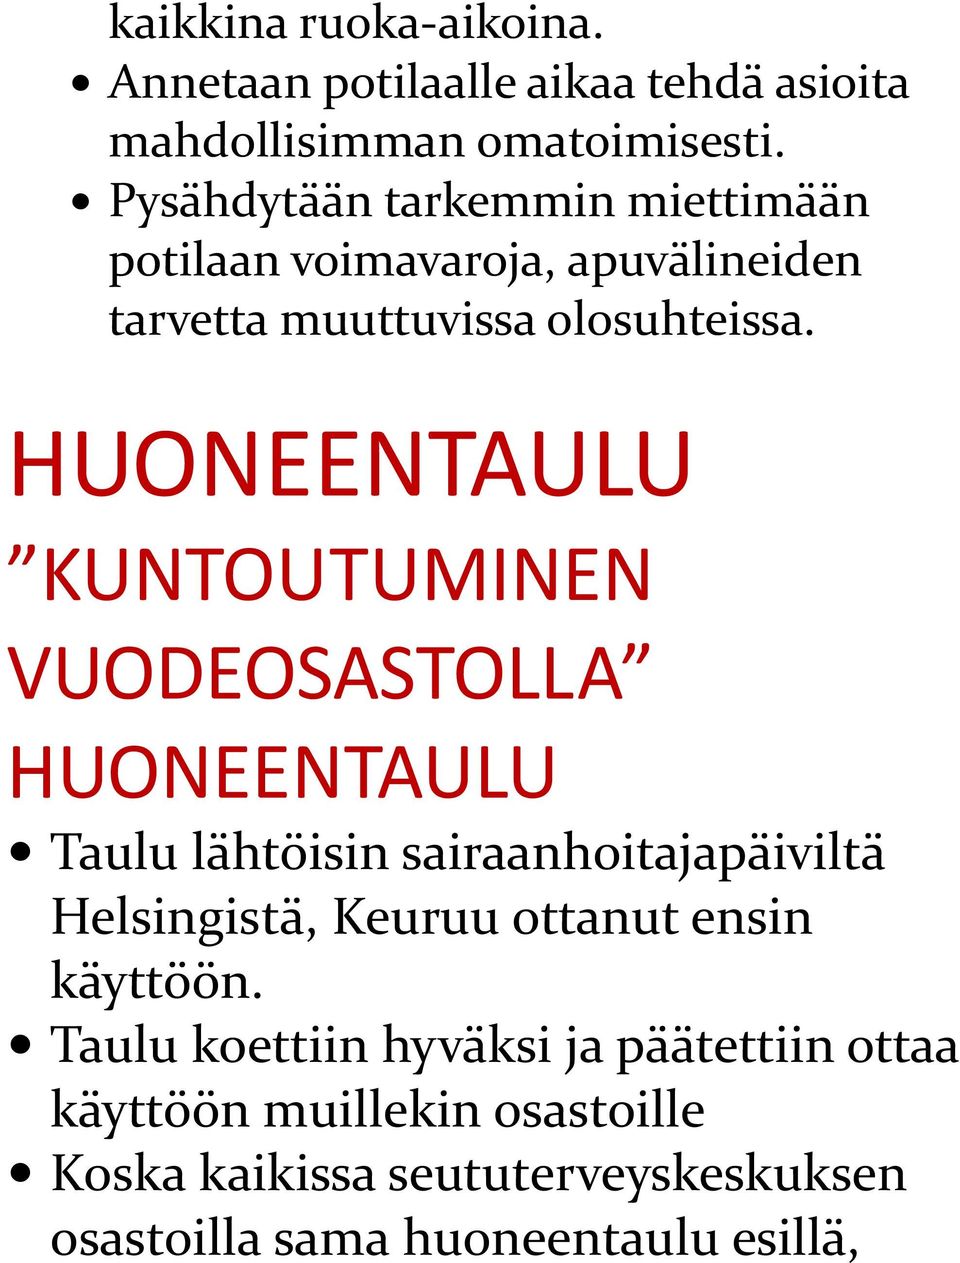 HUONEENTAULU KUNTOUTUMINEN VUODEOSASTOLLA HUONEENTAULU Taulu lähtöisin sairaanhoitajapäiviltä Helsingistä, Keuruu